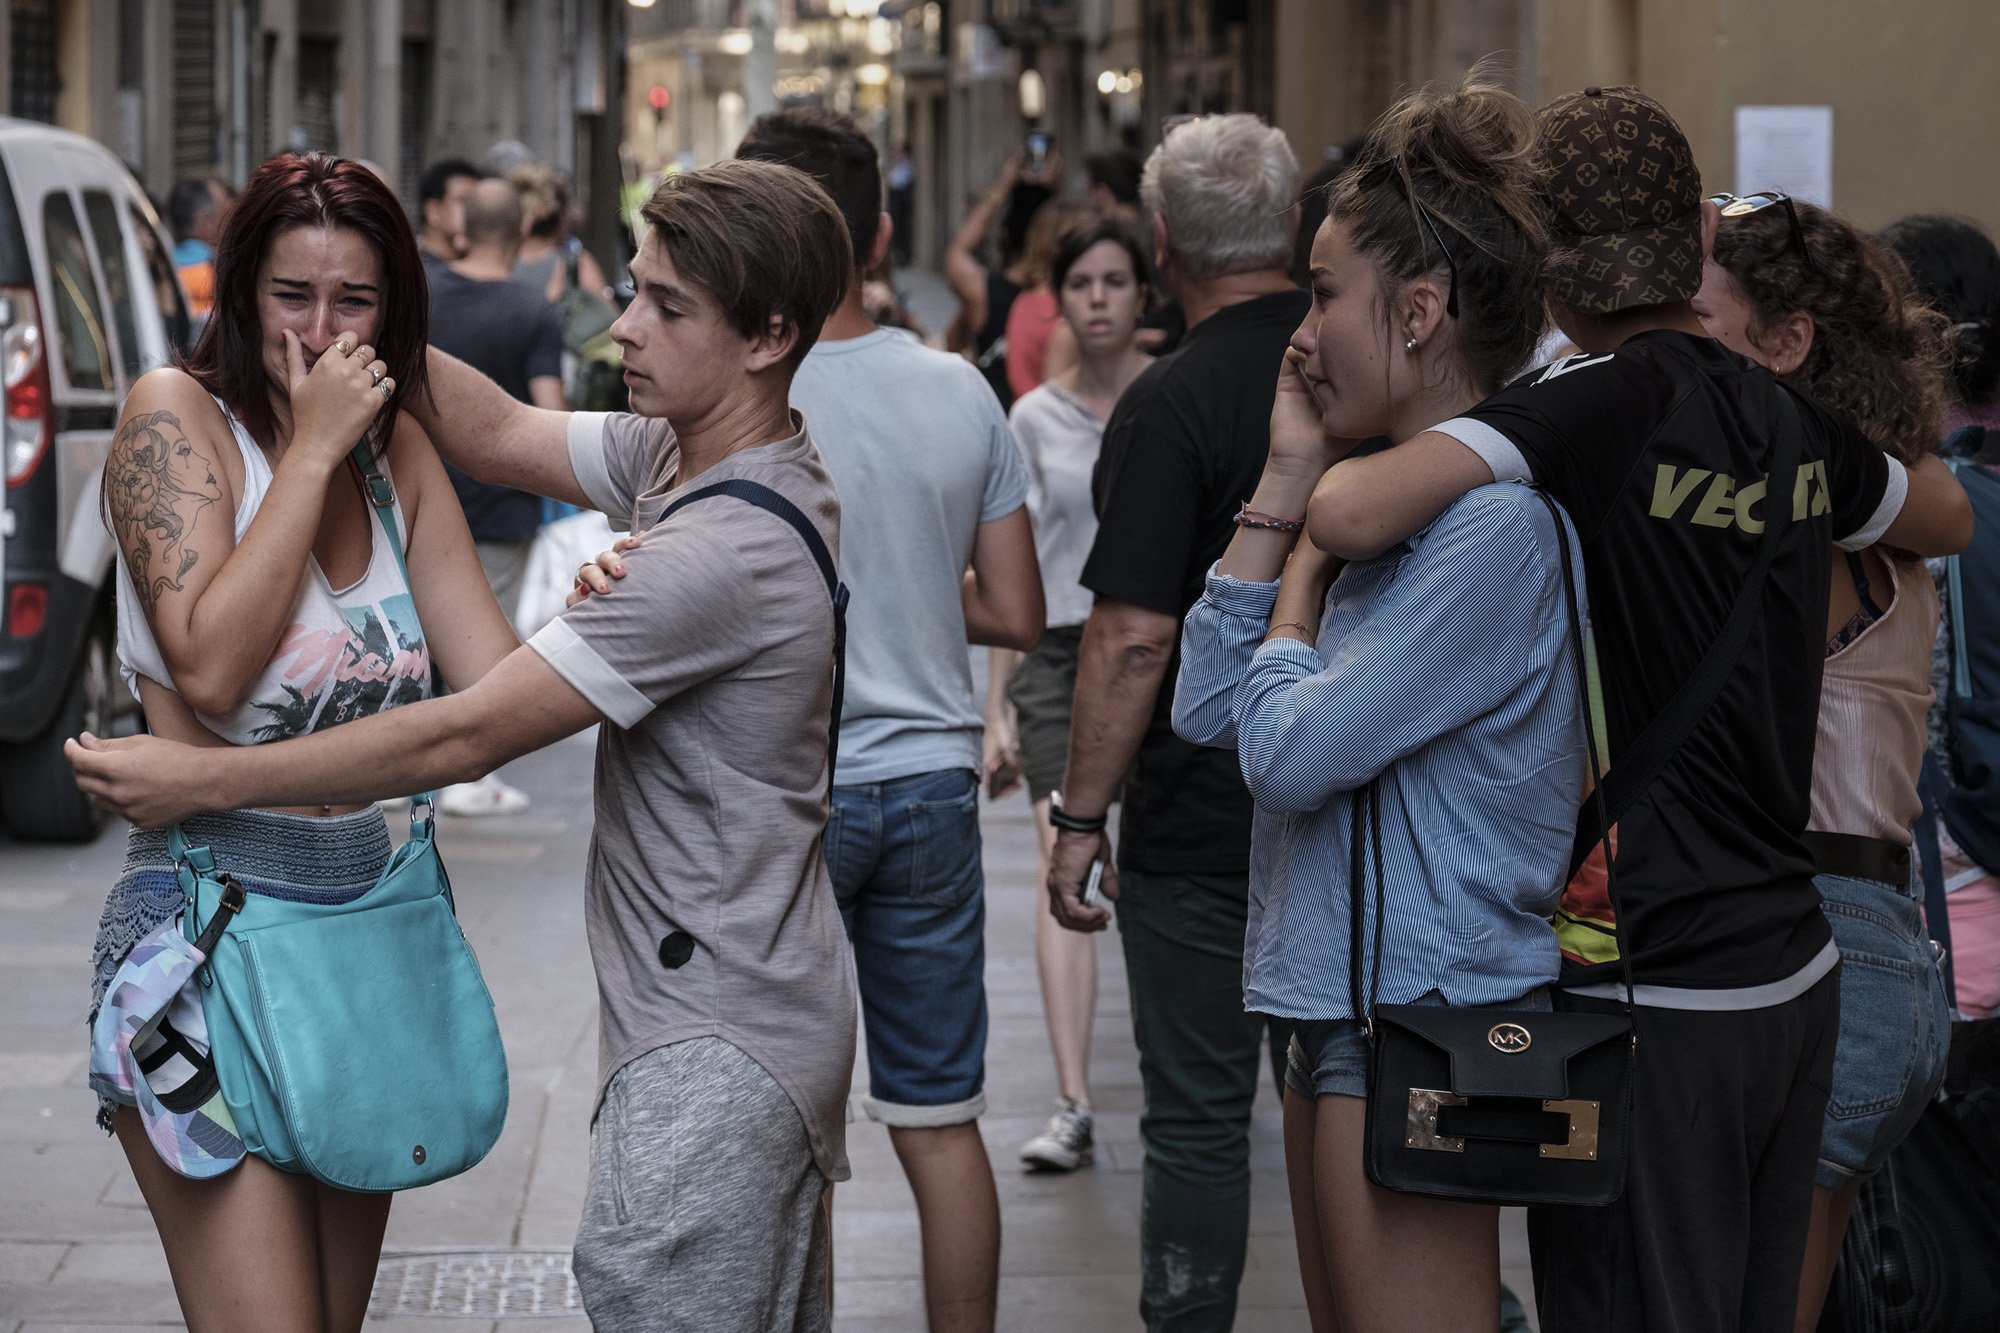 Montse Tió, directora de '3 dies d’agost': "Ningú es va preocupar per les víctimes"